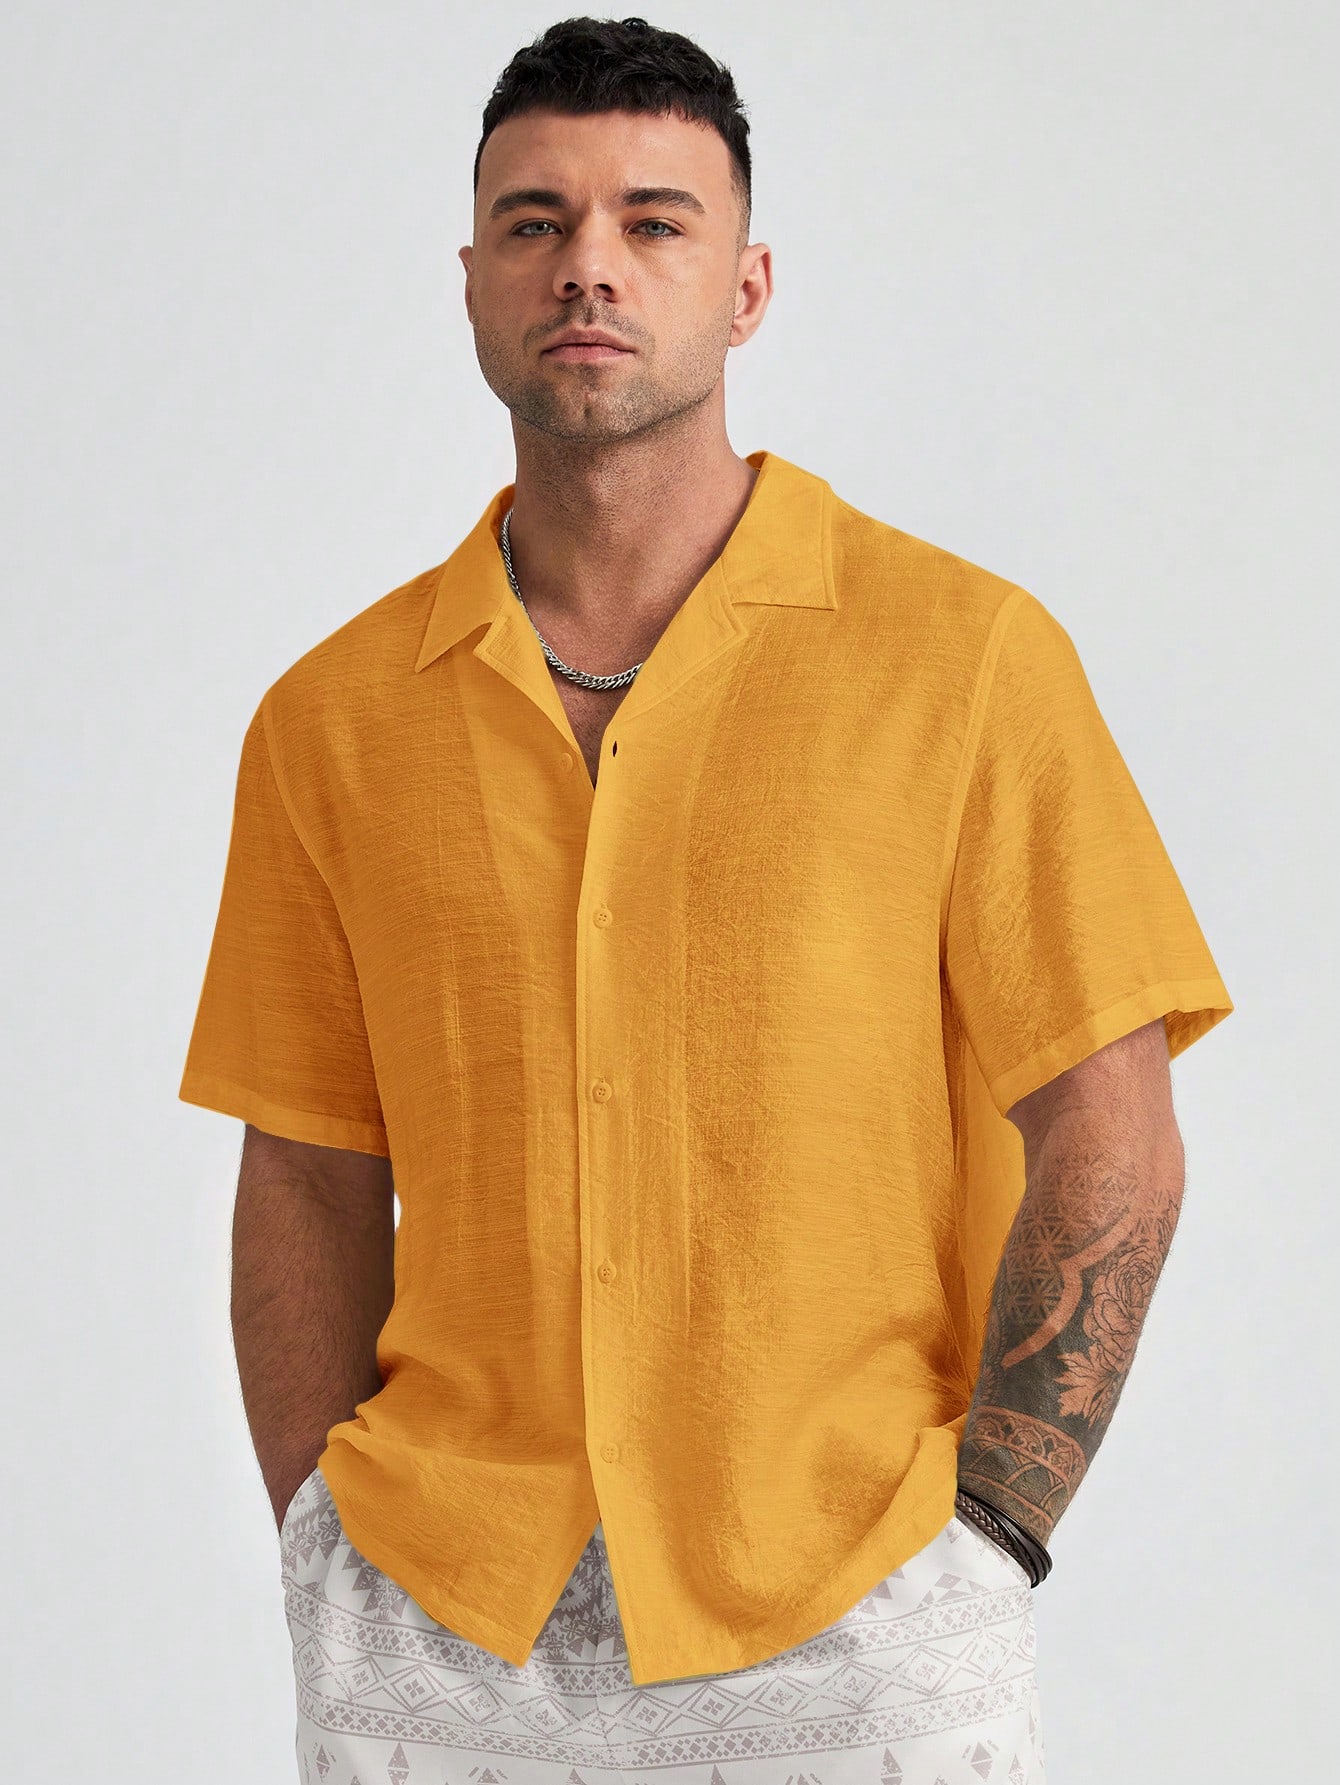 цена Manfinity Homme Мужская однотонная тканая рубашка больших размеров с коротким рукавом больших размеров, желтый